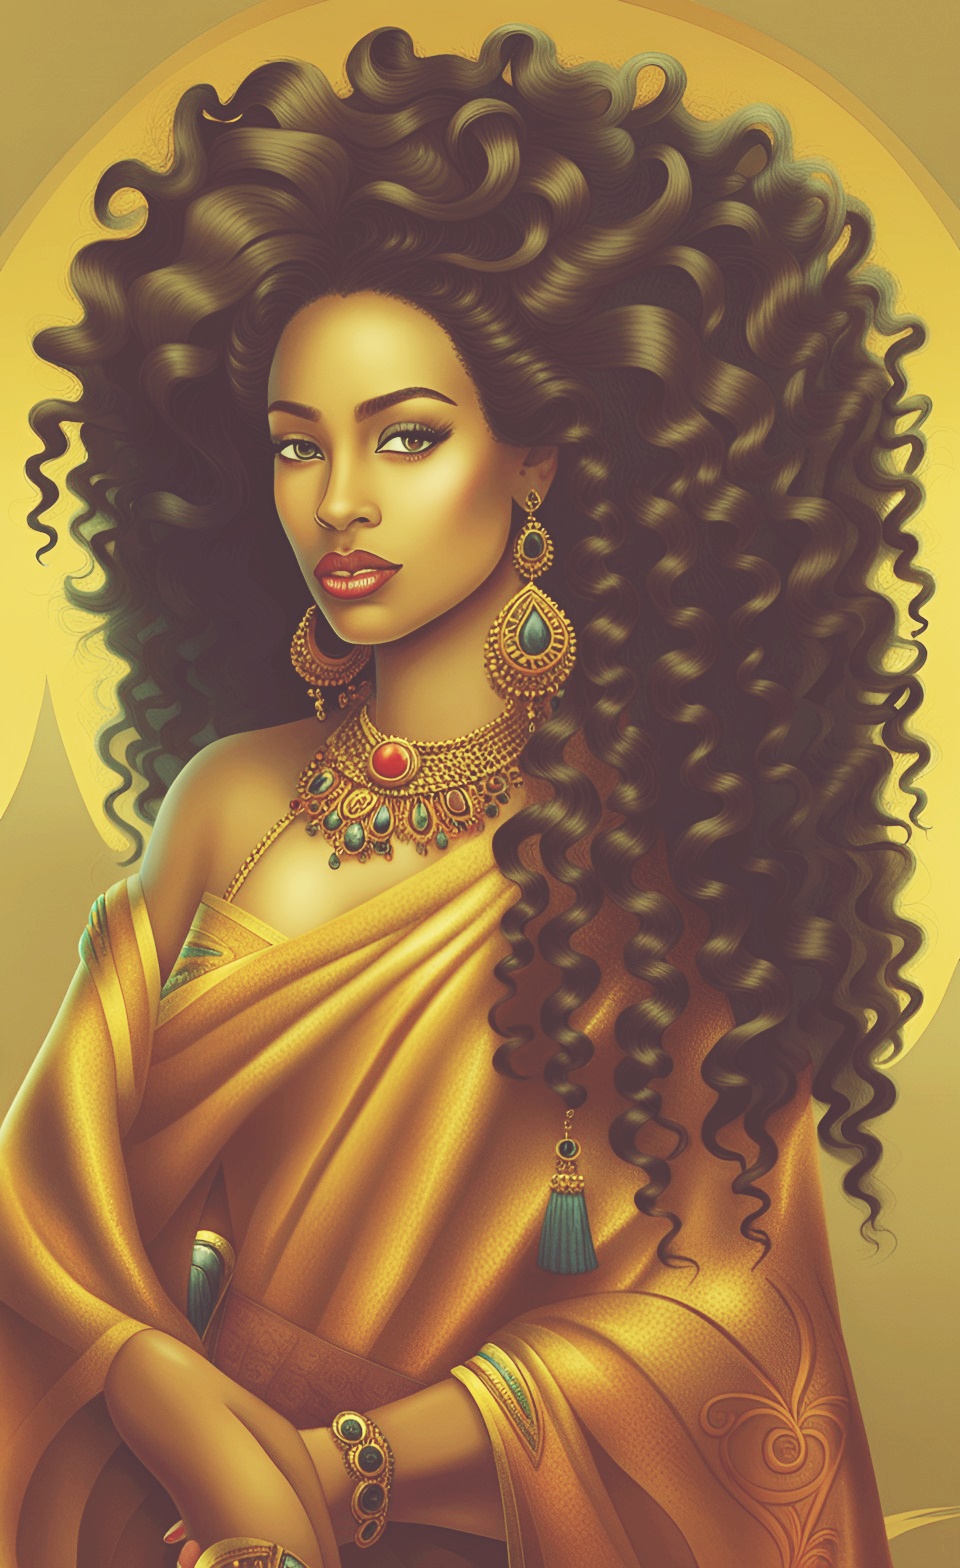 Mixed-race Queen of SHEBA art work Mixed435